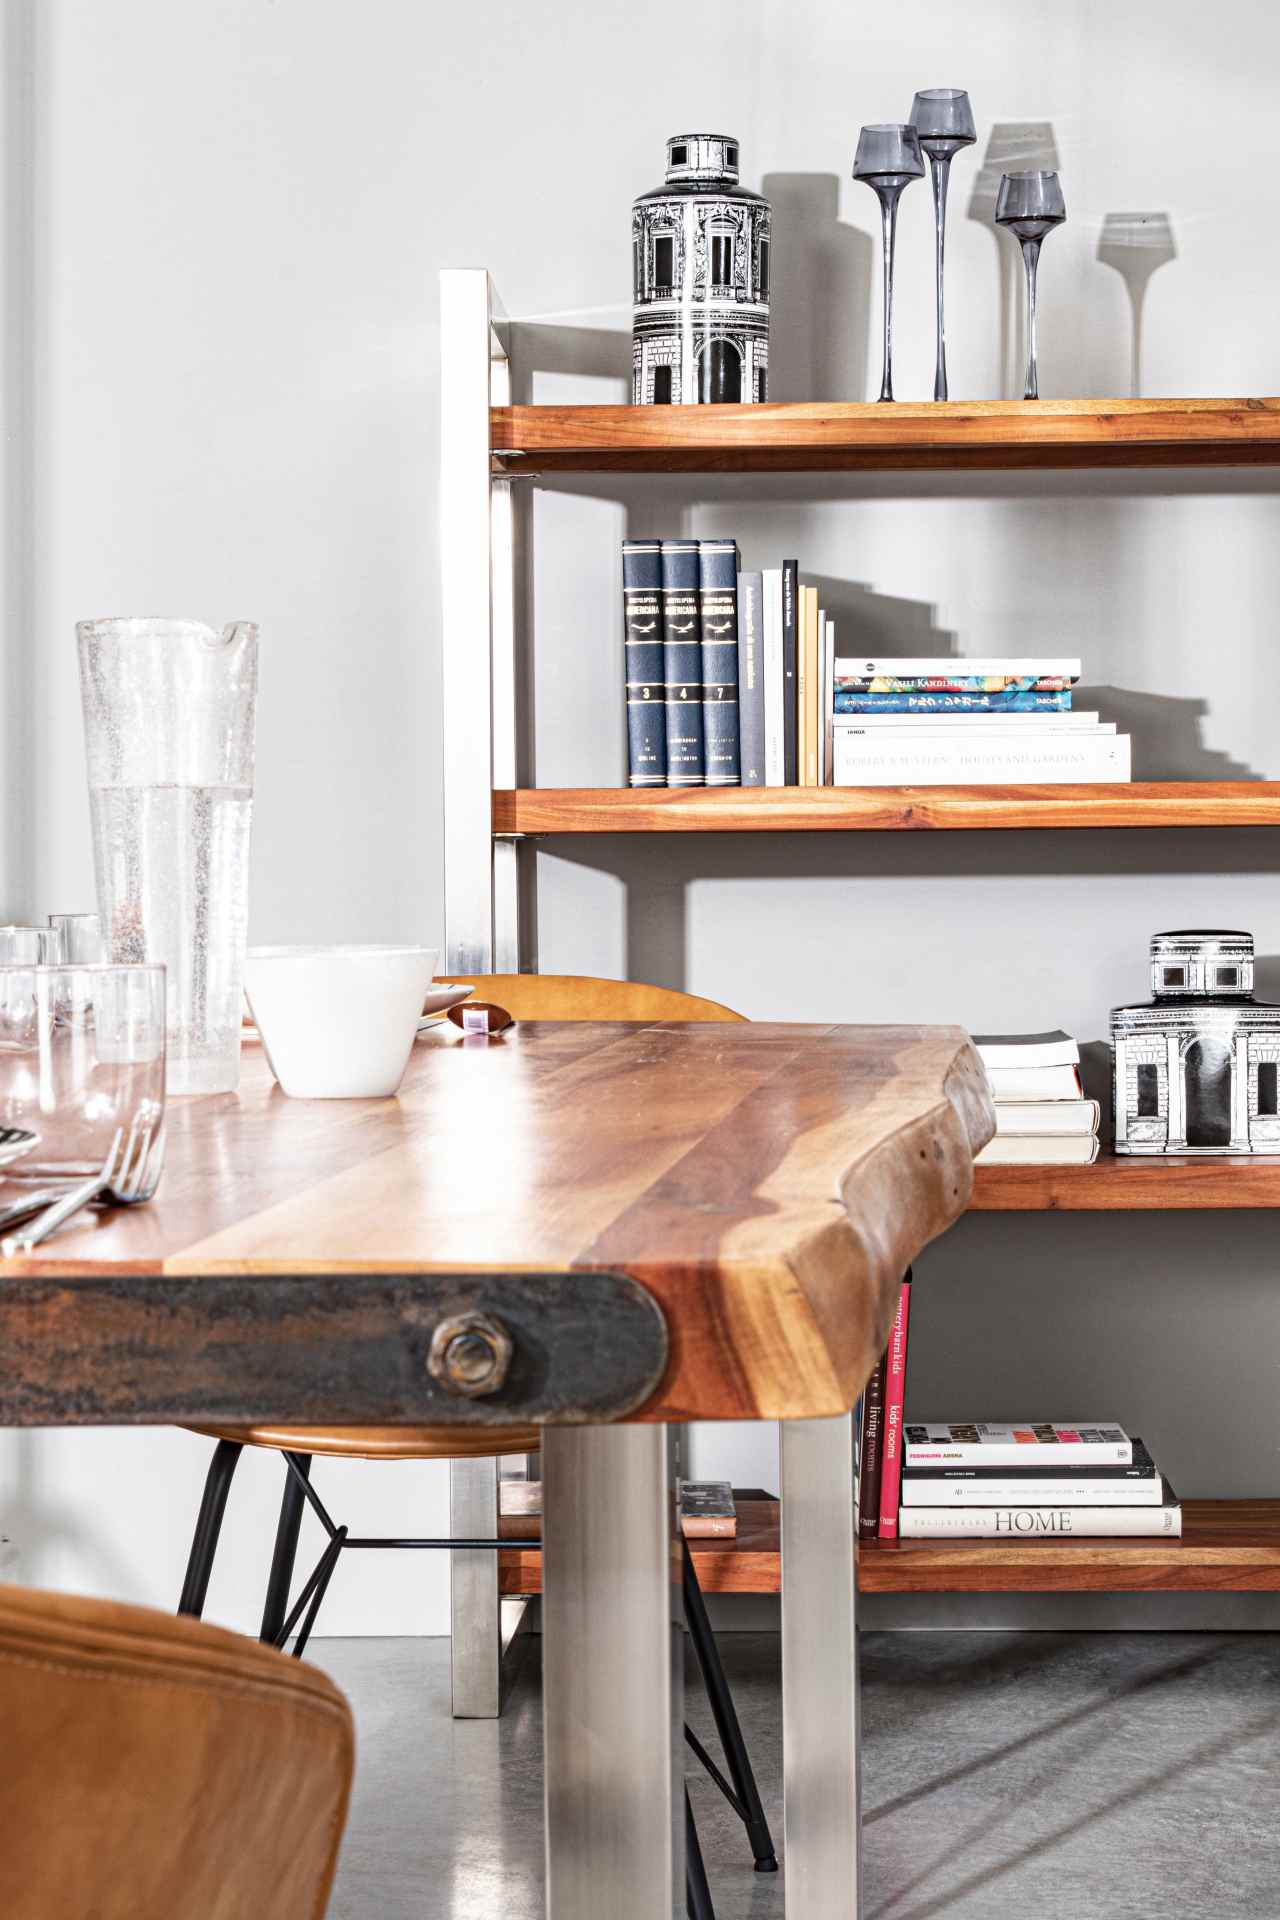 Der Esstisch Osbert überzeugt mit seinem moderndem Design. Gefertigt wurde er aus Akazienholz, welches einen natürlichen Farbton besitzt. Das Gestell des Tisches ist aus Metall und ist in eine silberne Farbe. Der Tisch besitzt eine Breite von 180 cm.